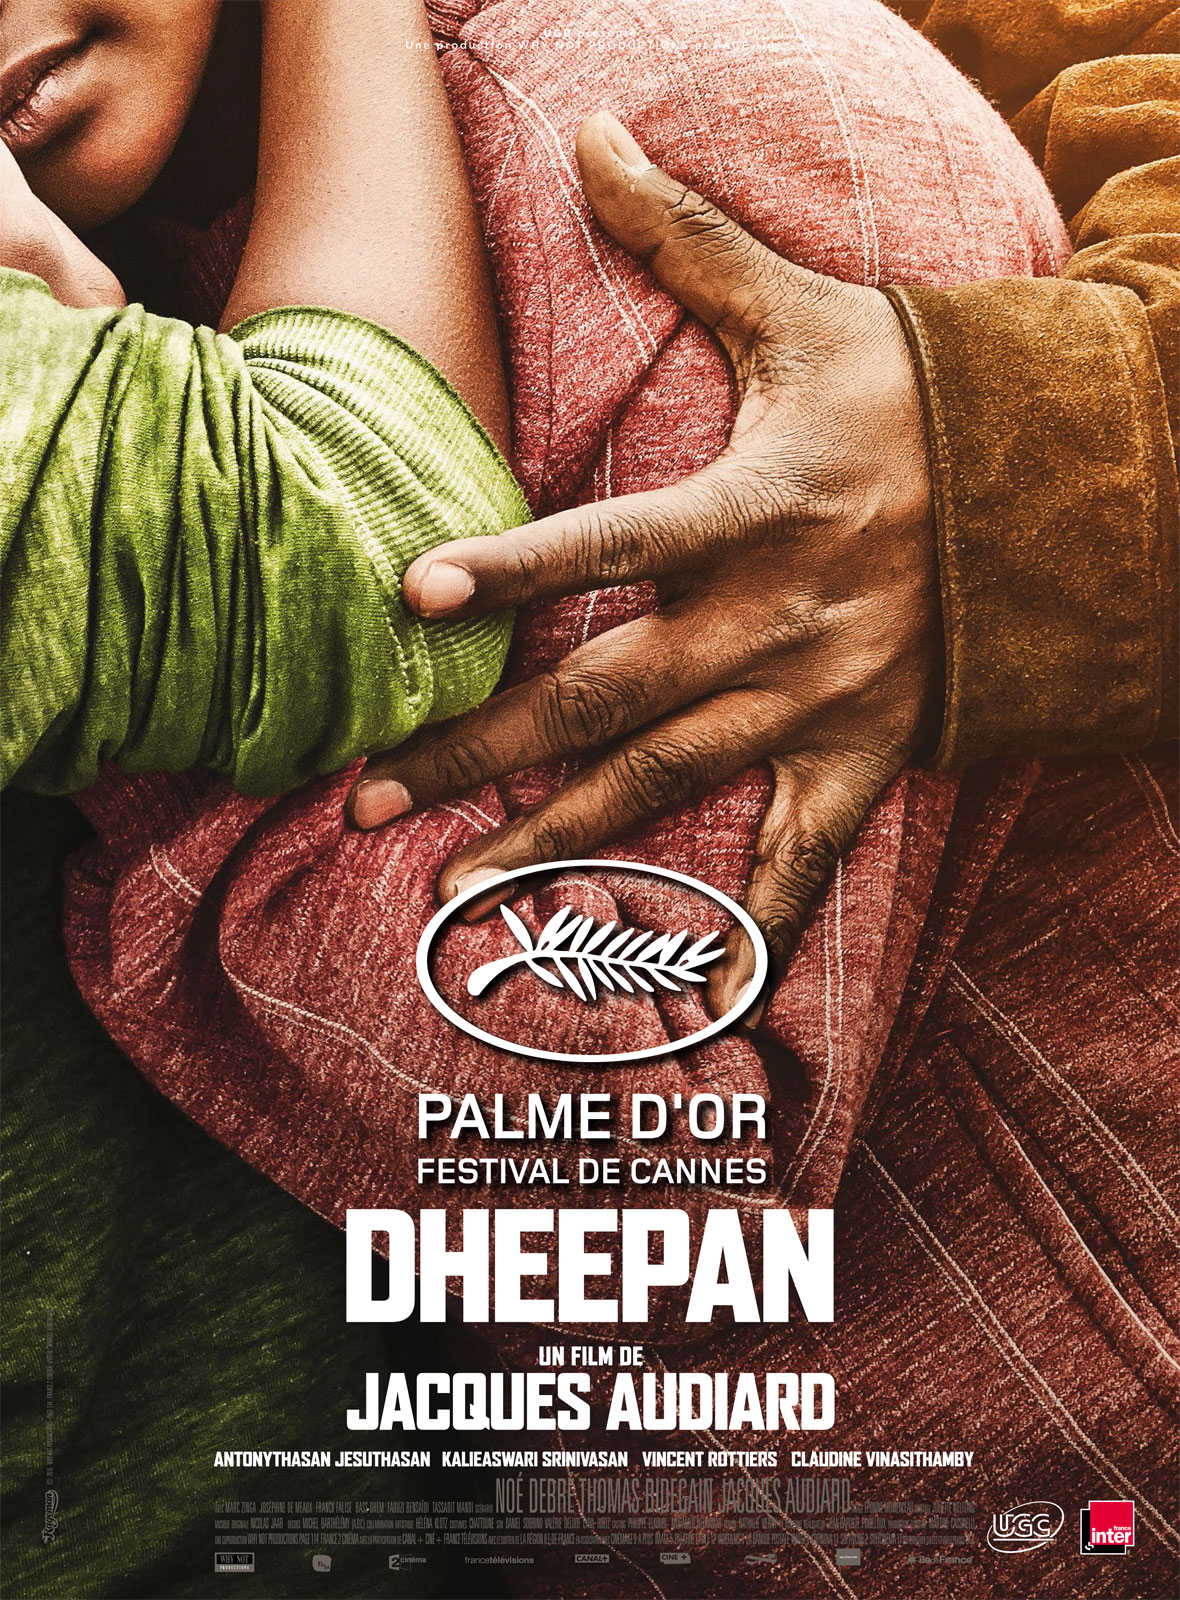 Deephan, un film de jacques Audiard